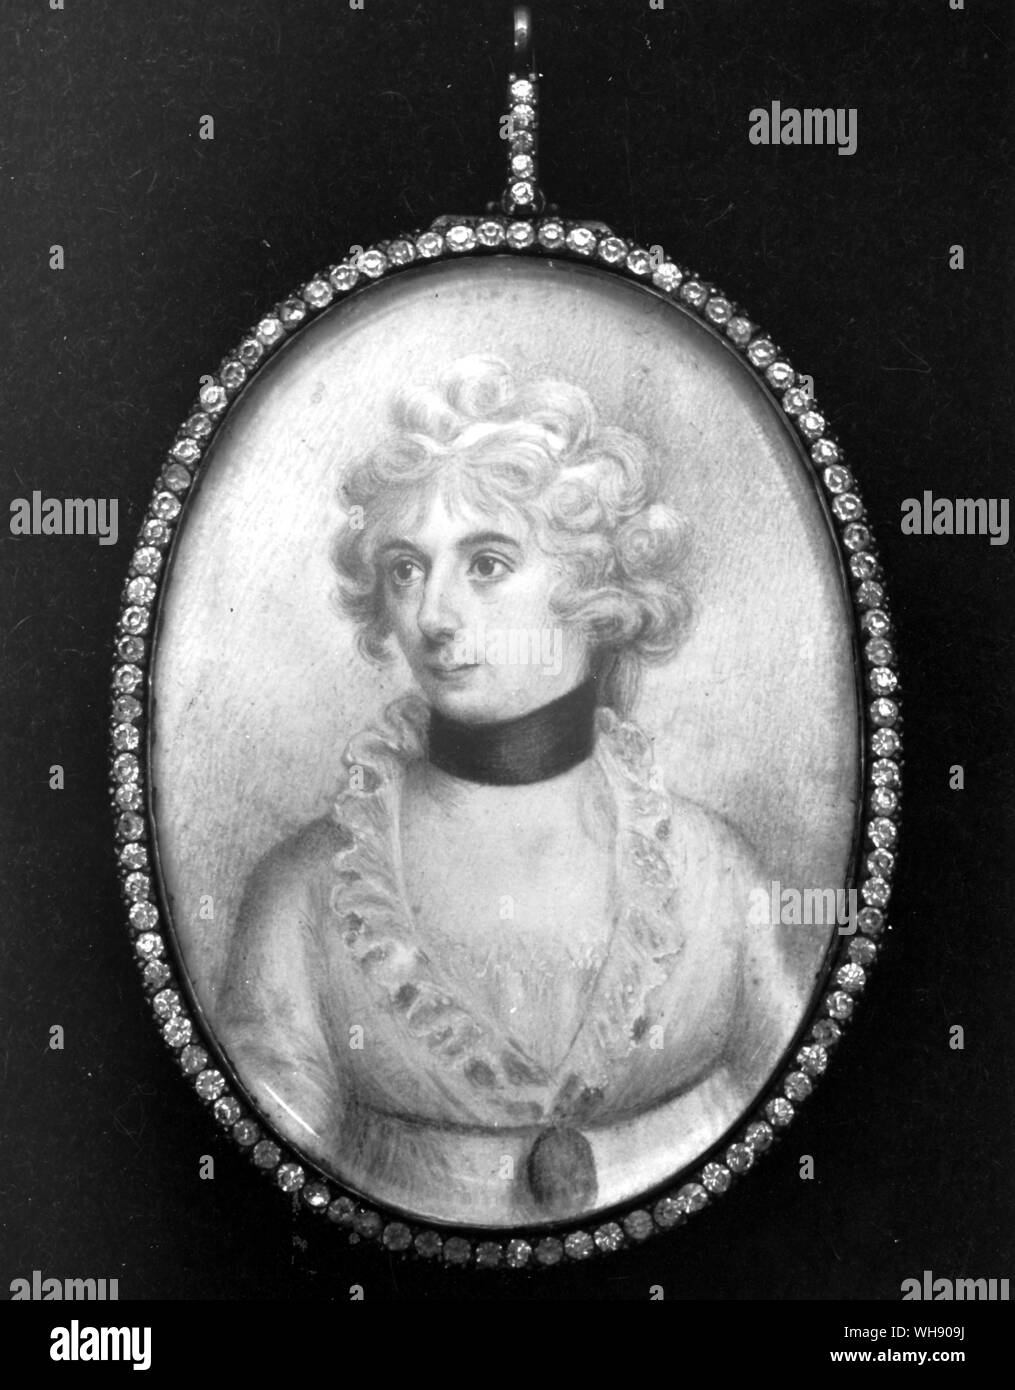 Lord Horatio Nelson la figlia Horatia dipinte in circa 1815. Sembrava di avere ereditato Horatio le funzionalità e non quelli di sua madre Emma Hamilton. Horatia mai creduto che lei era la sua Emma della figlia per questo motivo. Foto Stock